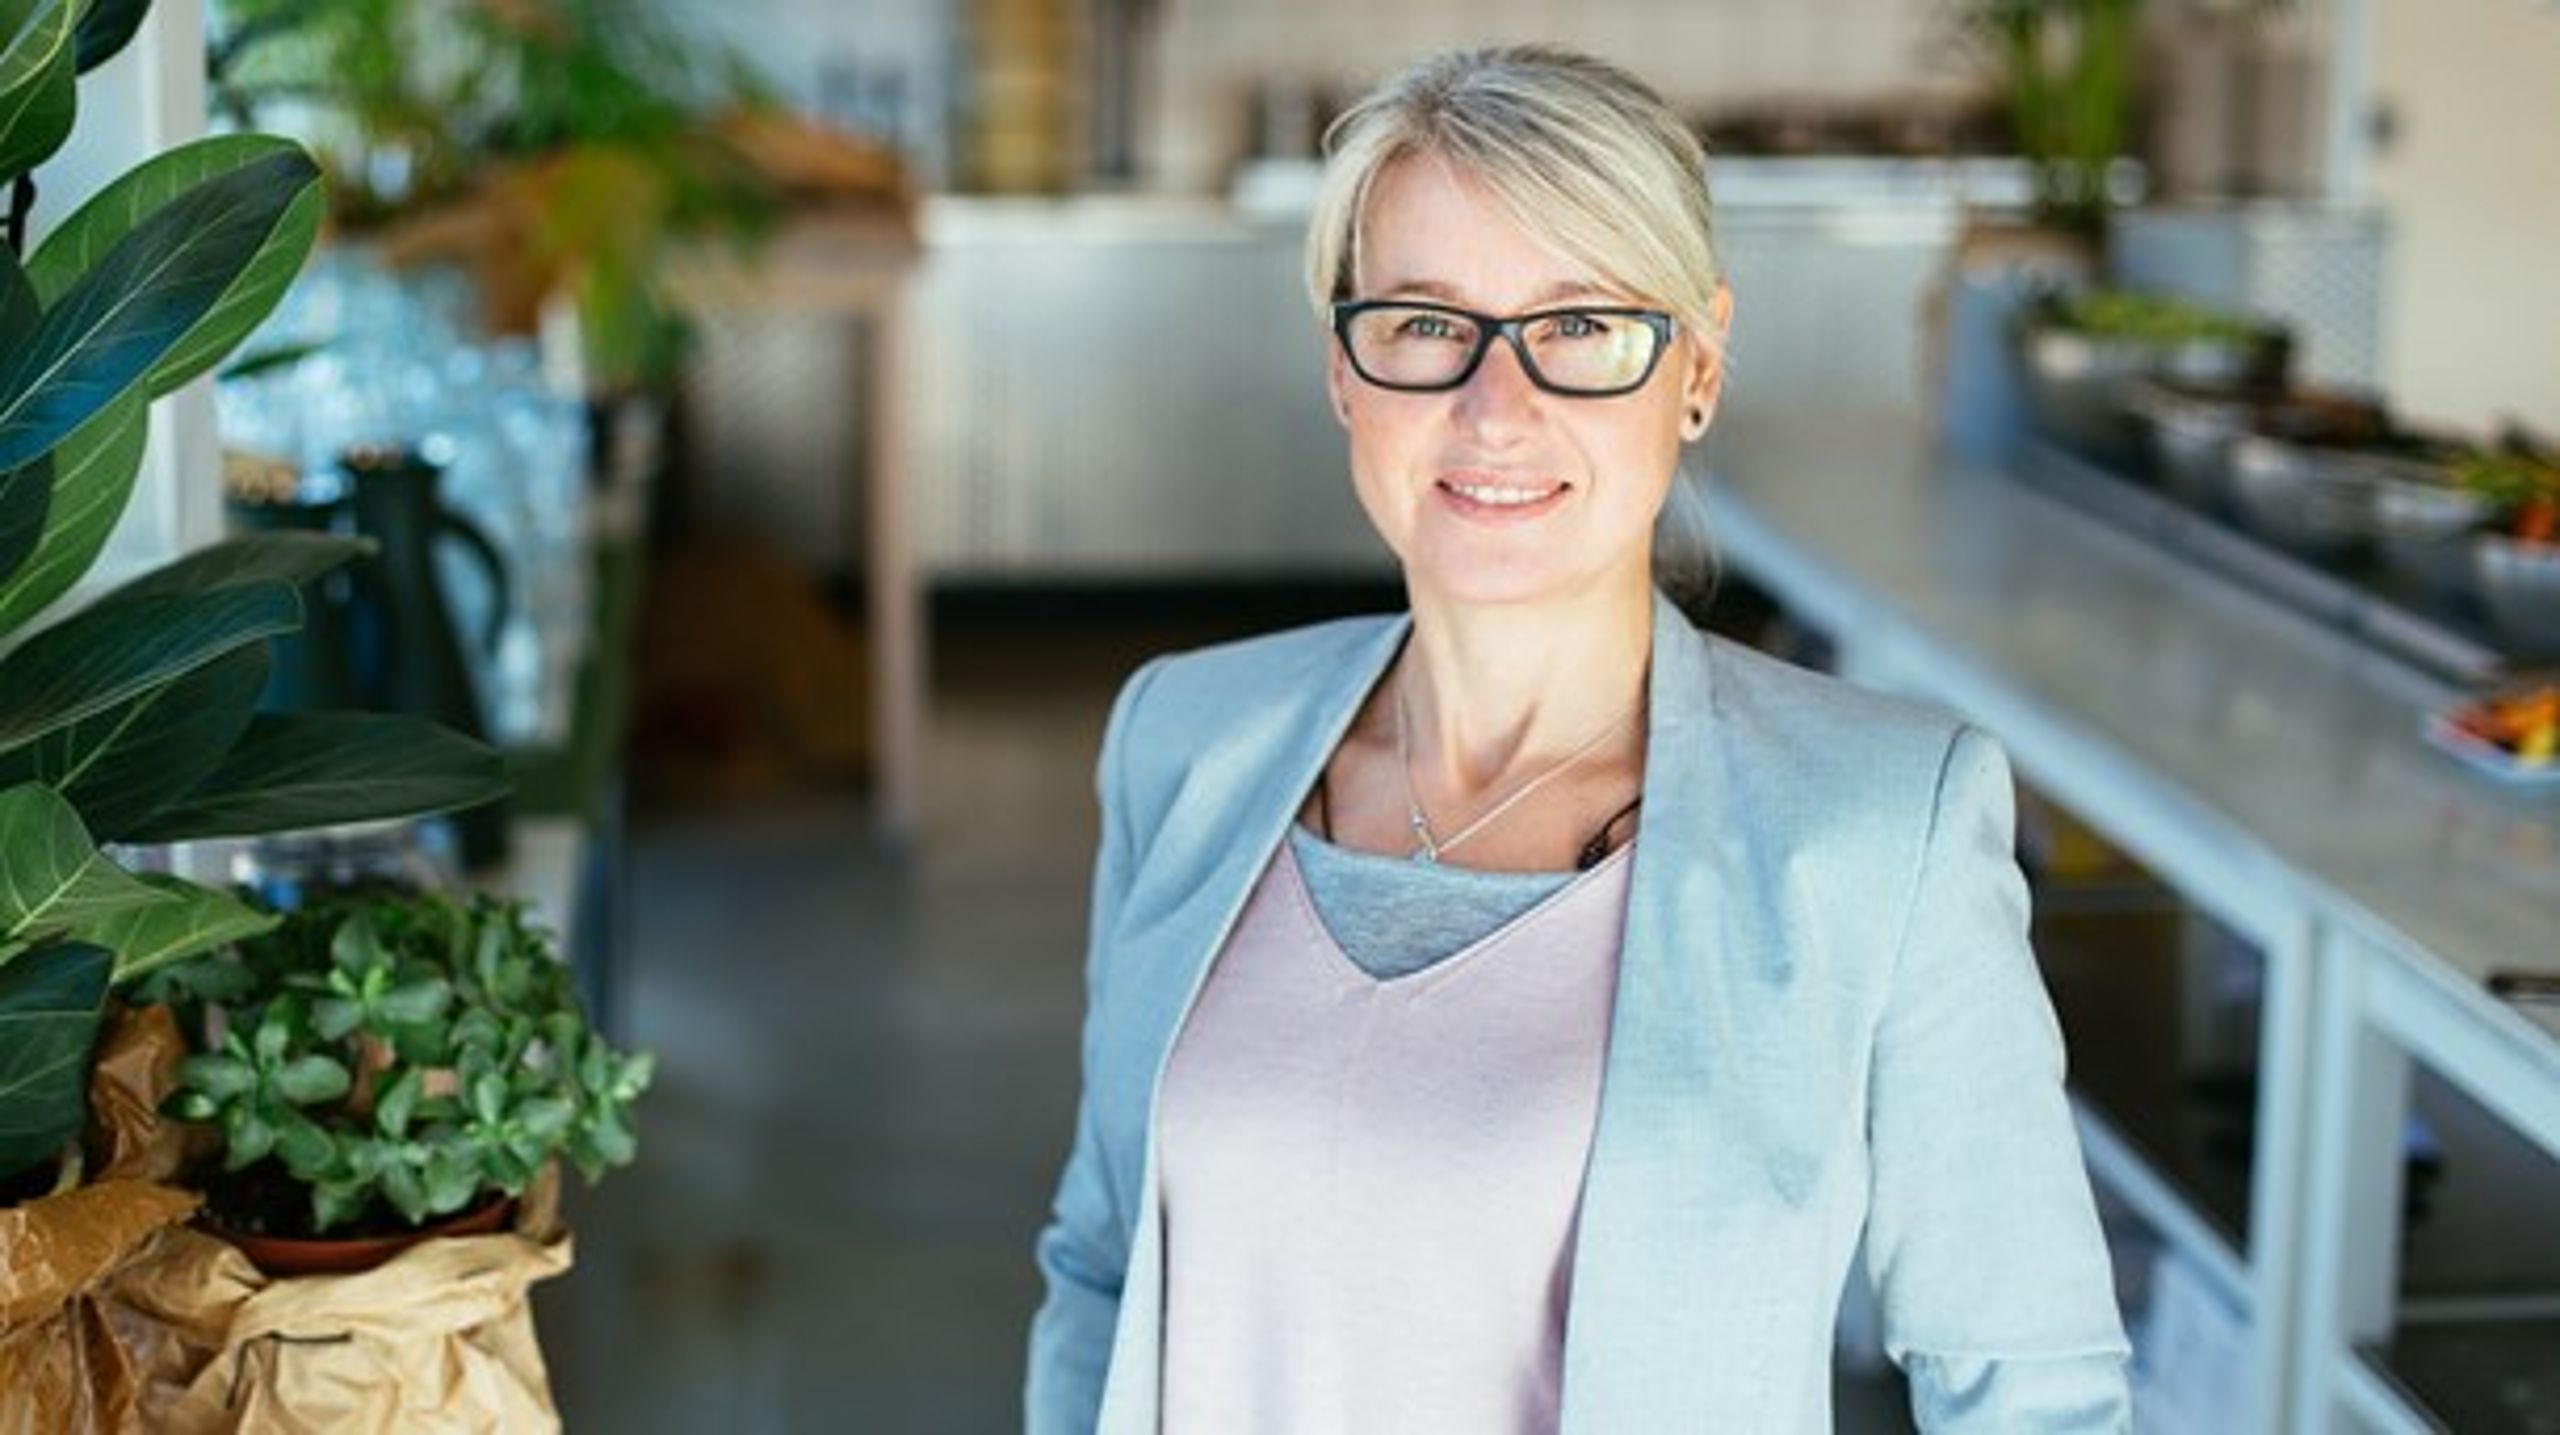 Cecilia&nbsp;McAleavey er chef for public affairs i den svenske virksomhed&nbsp;Oatly, der producerer alternativer til mejeriprodukter fra havre.